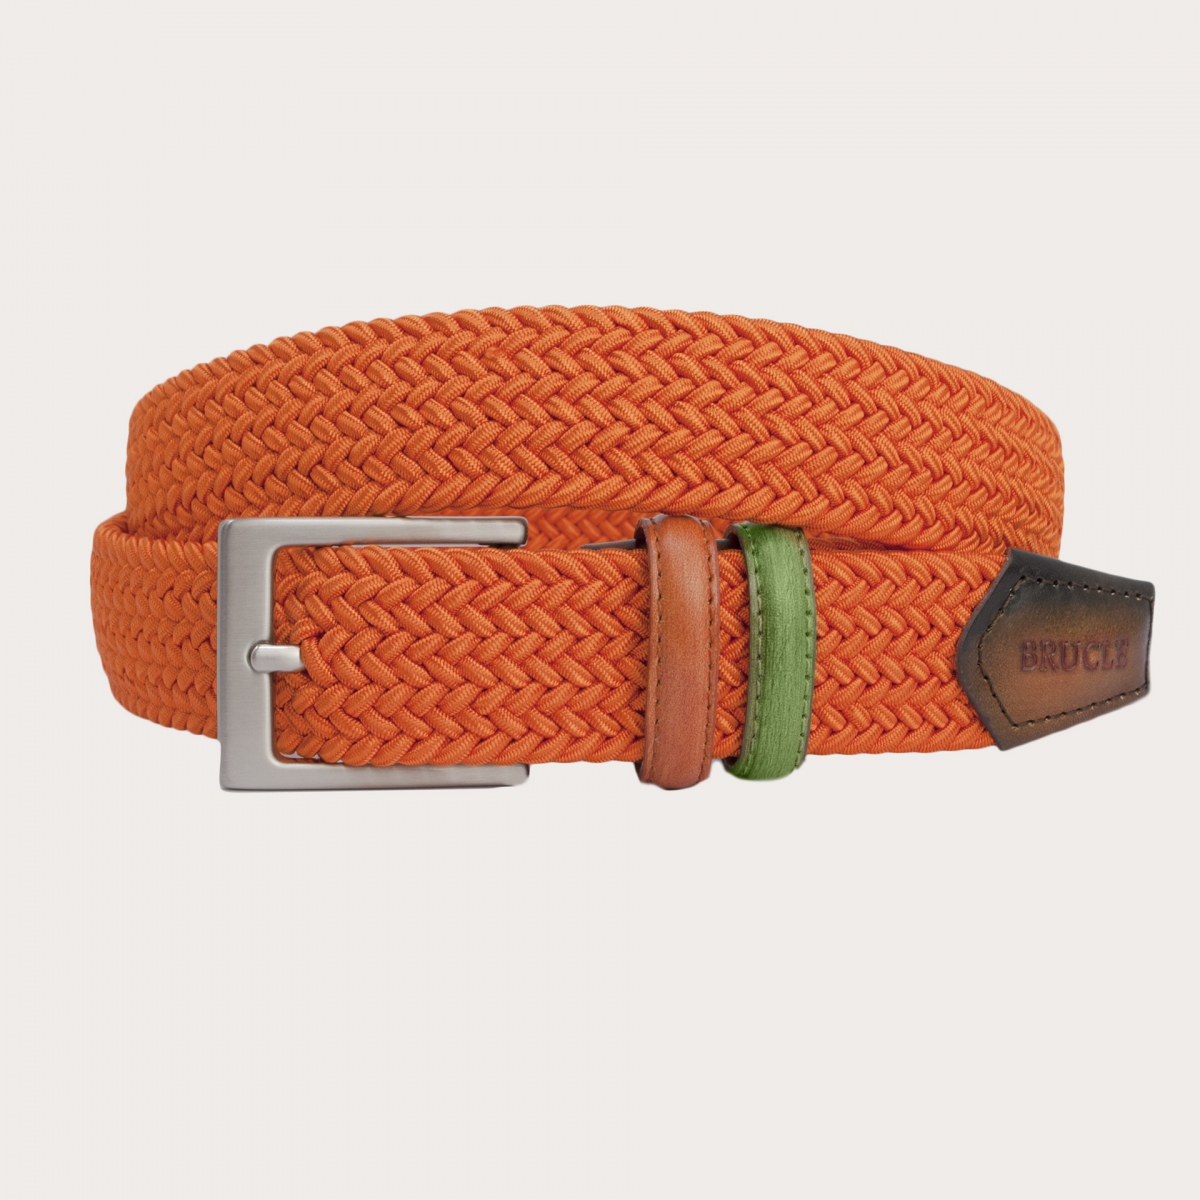 BRUCLE Cinturón elástico trenzado naranja con partes de piel bicolor tamponada a mano